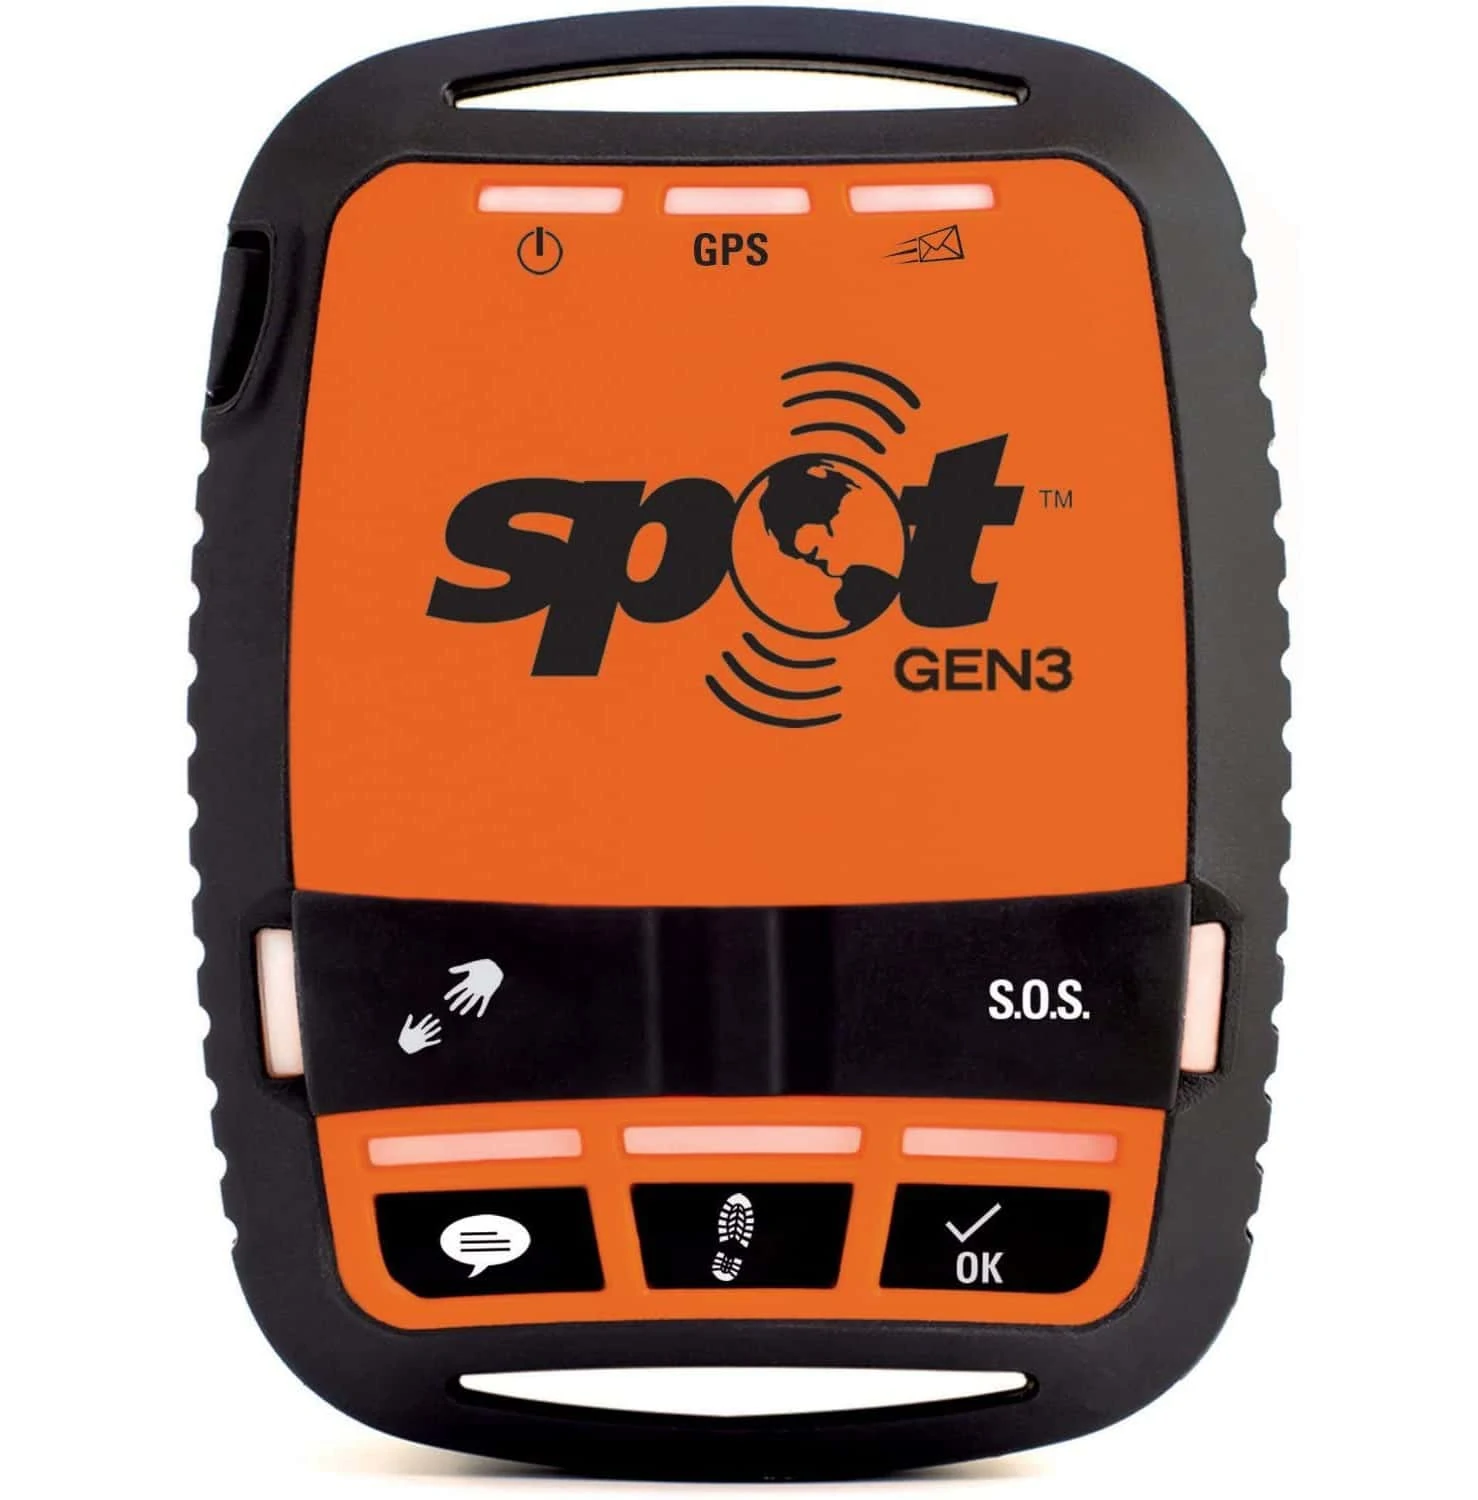 Spot Gen3 Gps Tracker Van Voren